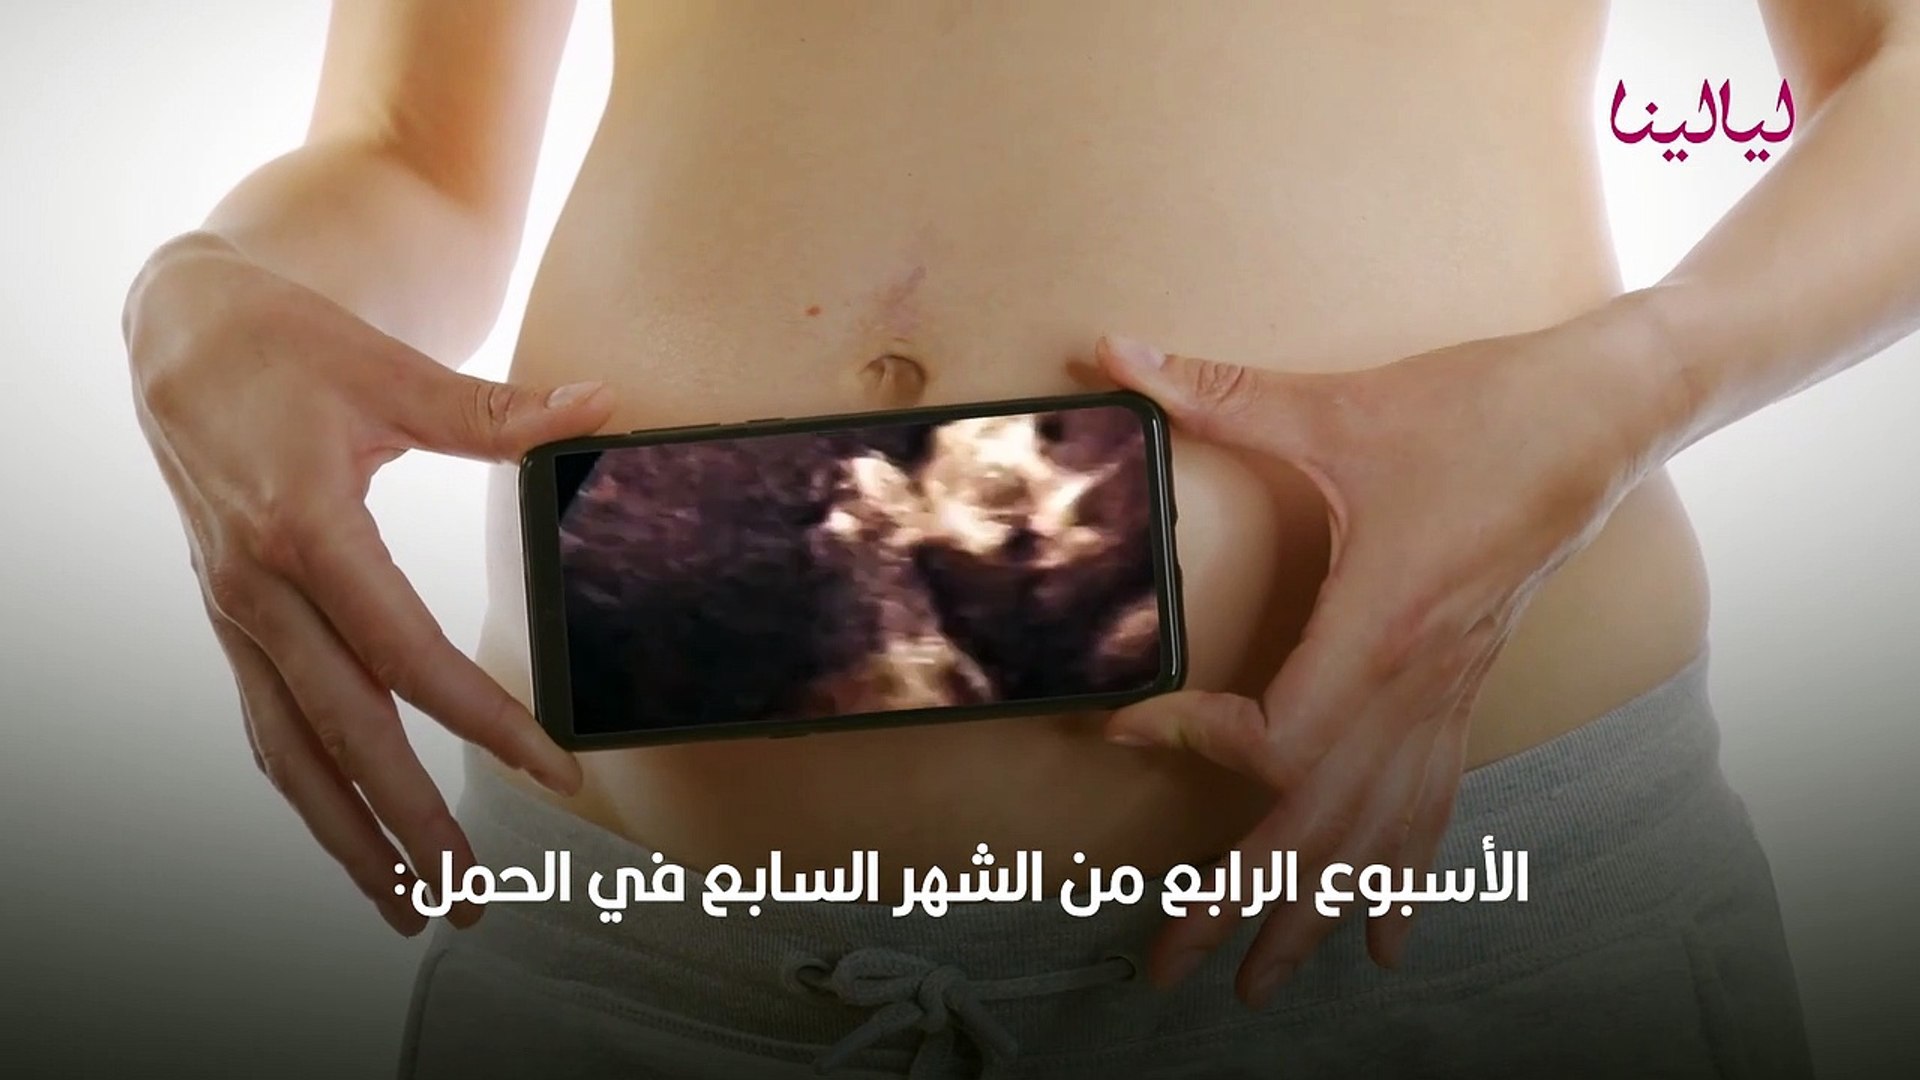 وزن الجنين في الشهر السابع من الحمل ونشاطه الطبيعي - فيديو Dailymotion